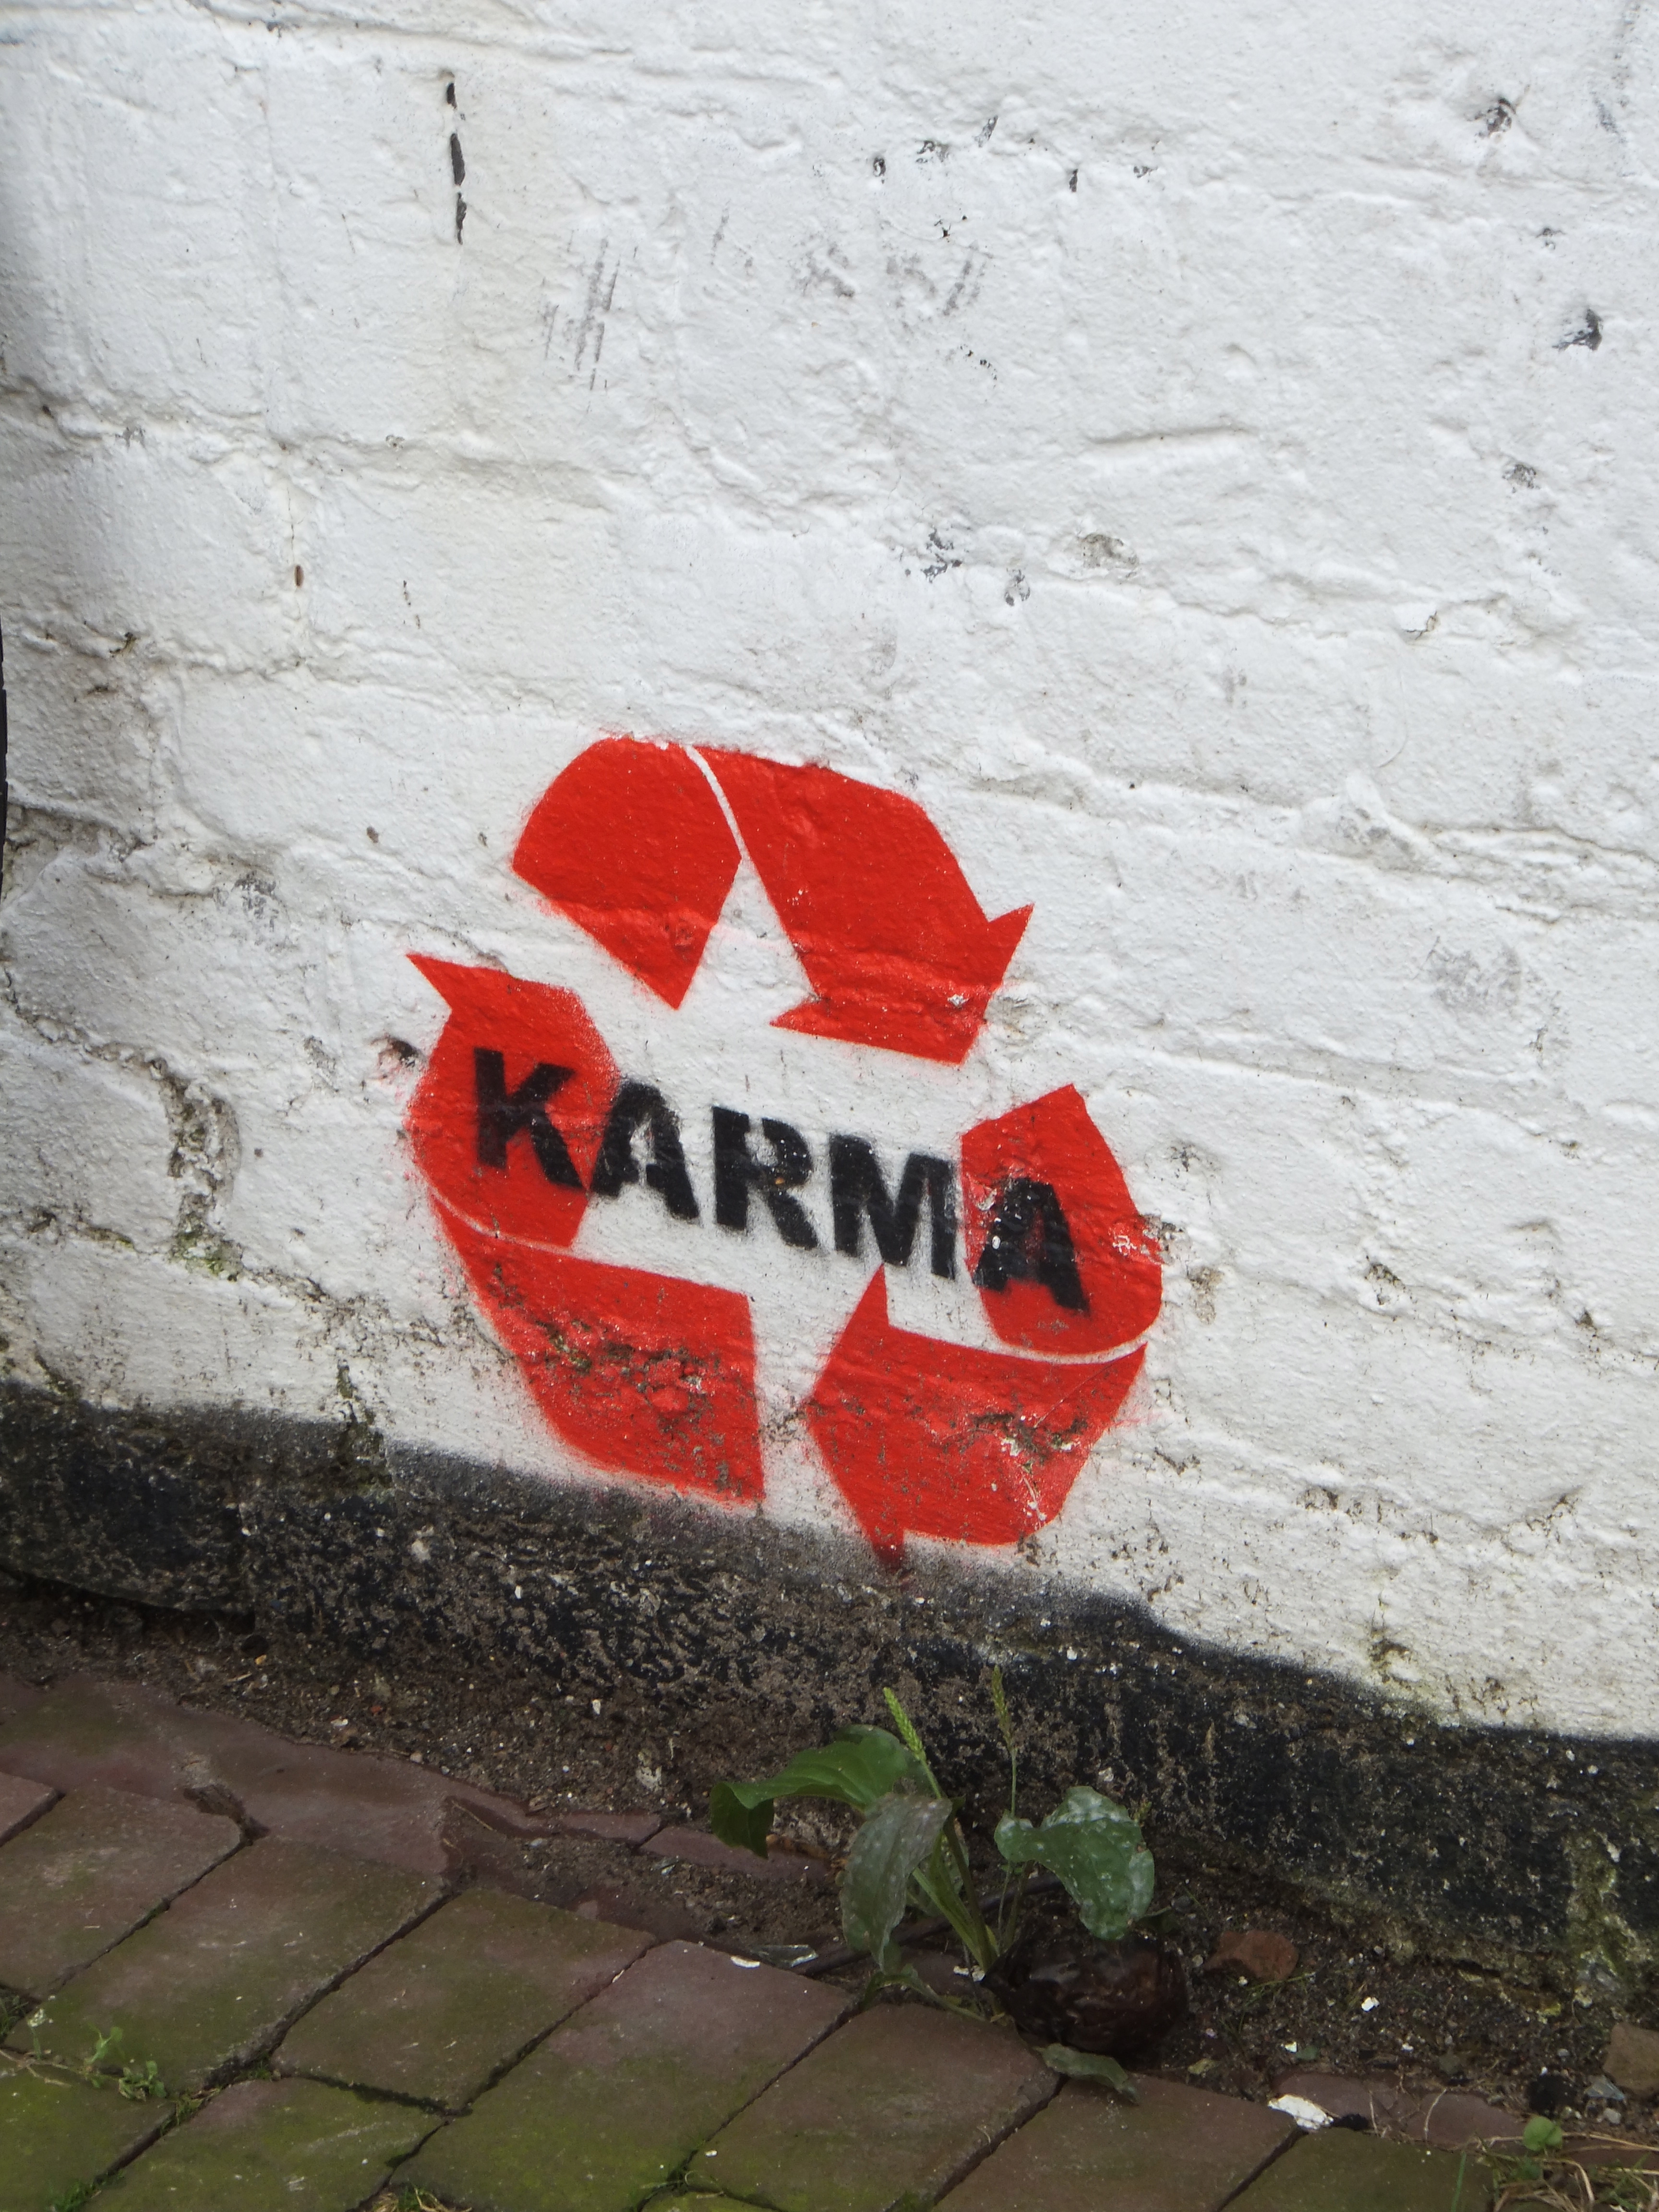 Photo Friday: Karma